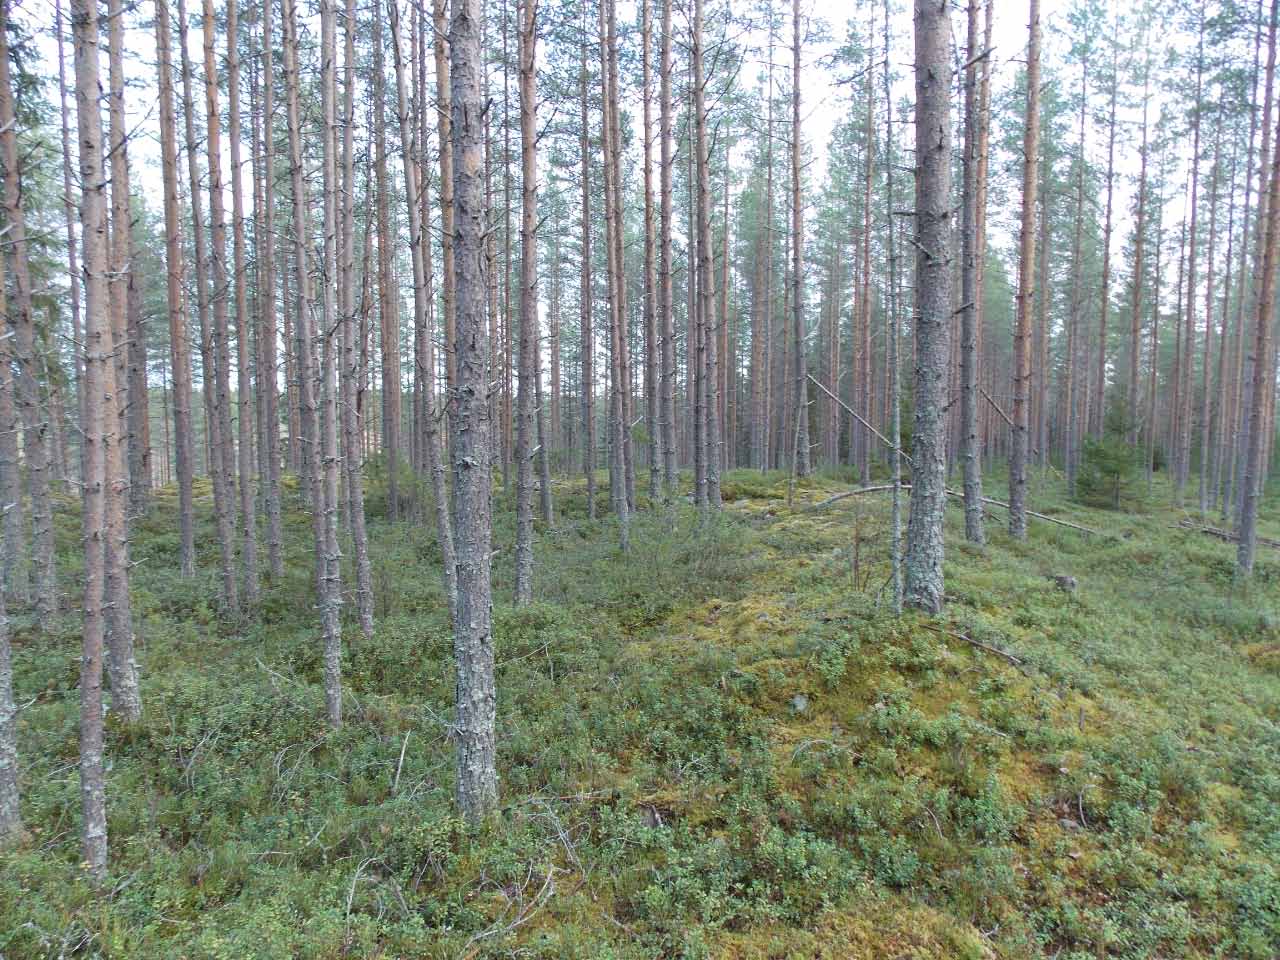 Kuva: Jätinkirkon itäkulmaa etelästä. Pohjois-Pohjanmaan museo. CC BY 4.0 Mika Sarkkinen 16.10.2020